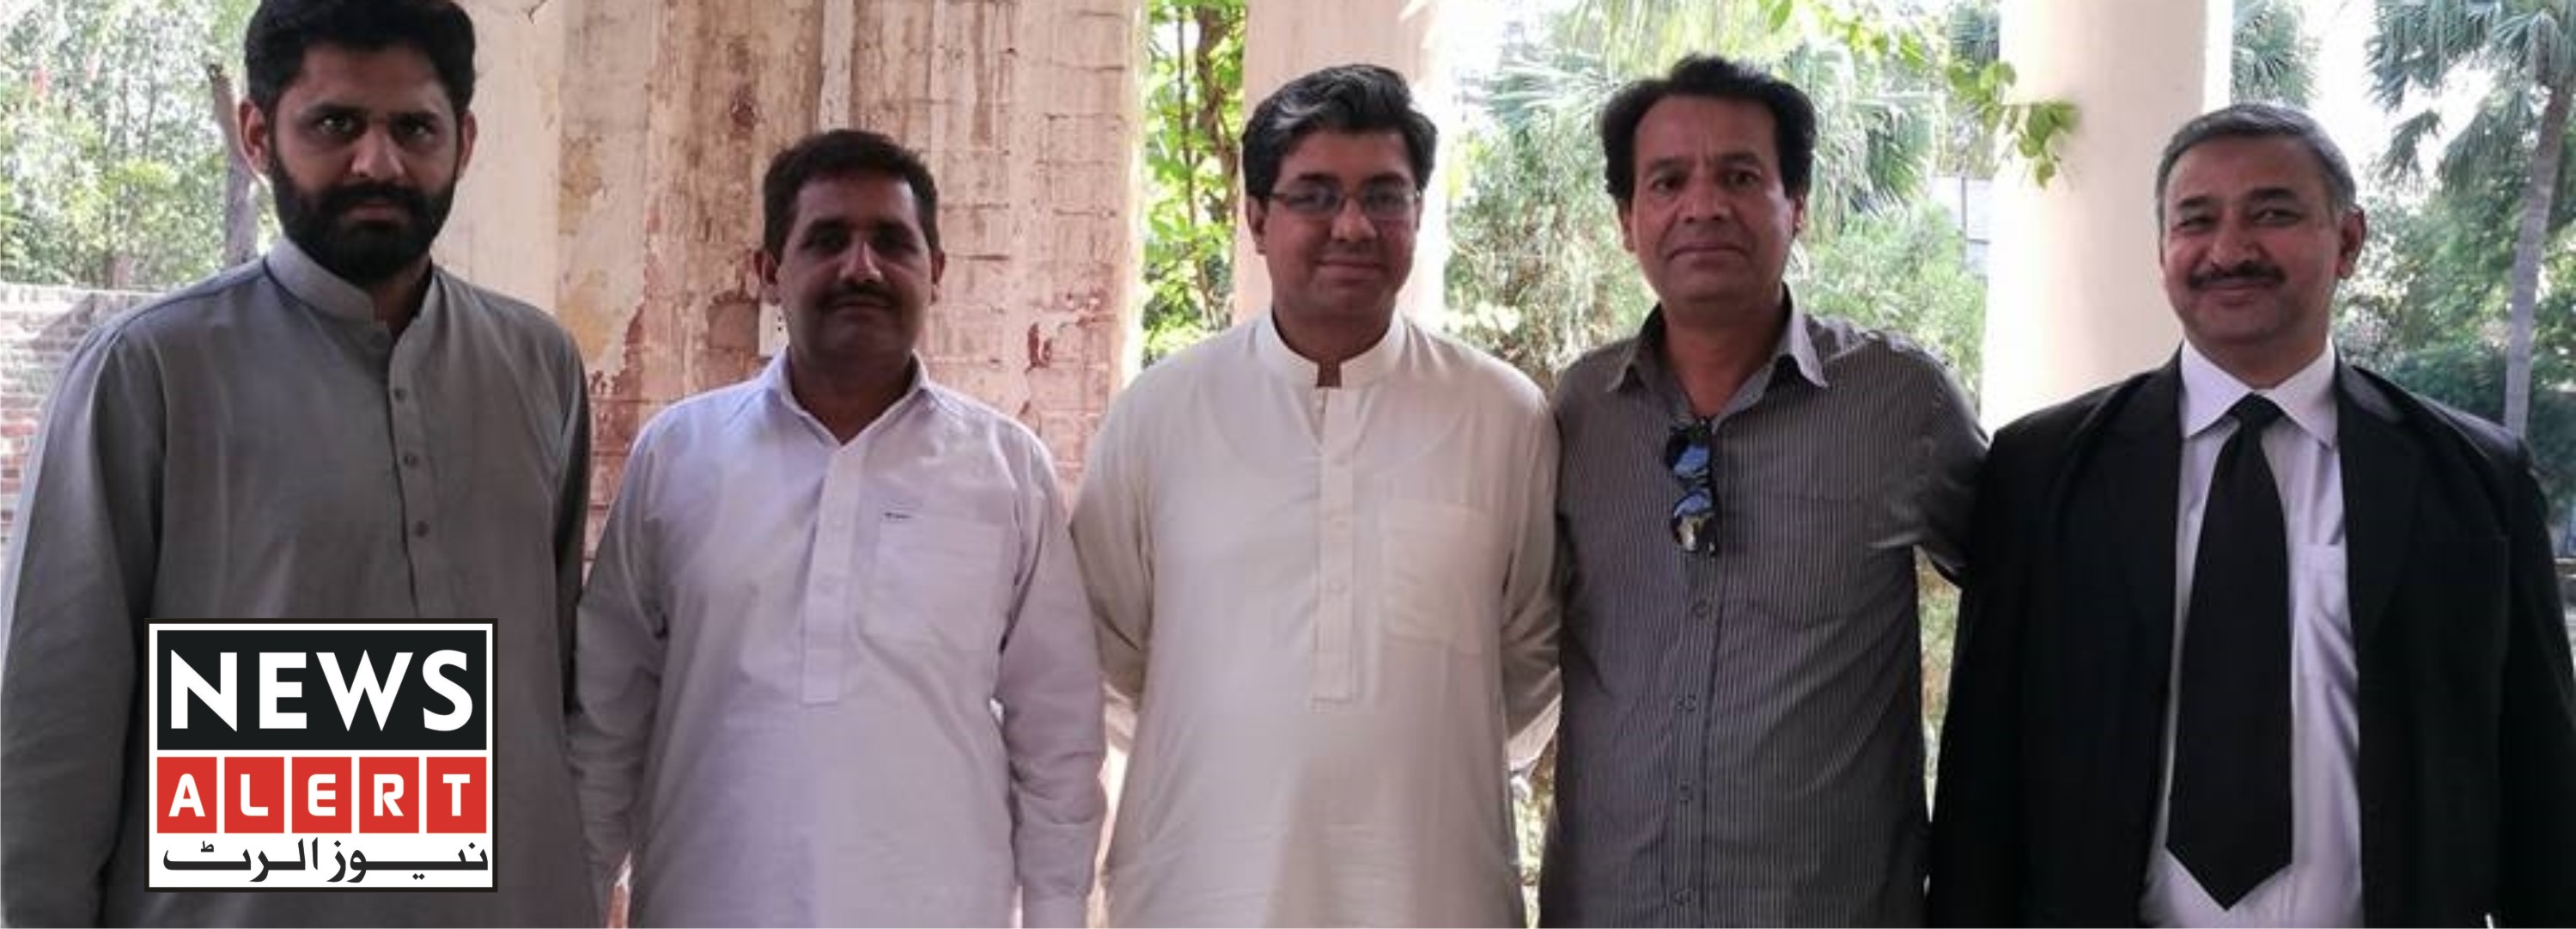 نواز شریف اور زرداری اینڈ کمپنی نے پاکستان کی سیاست کو تجارت بنالیا ہے، چوہدری عابد حسین